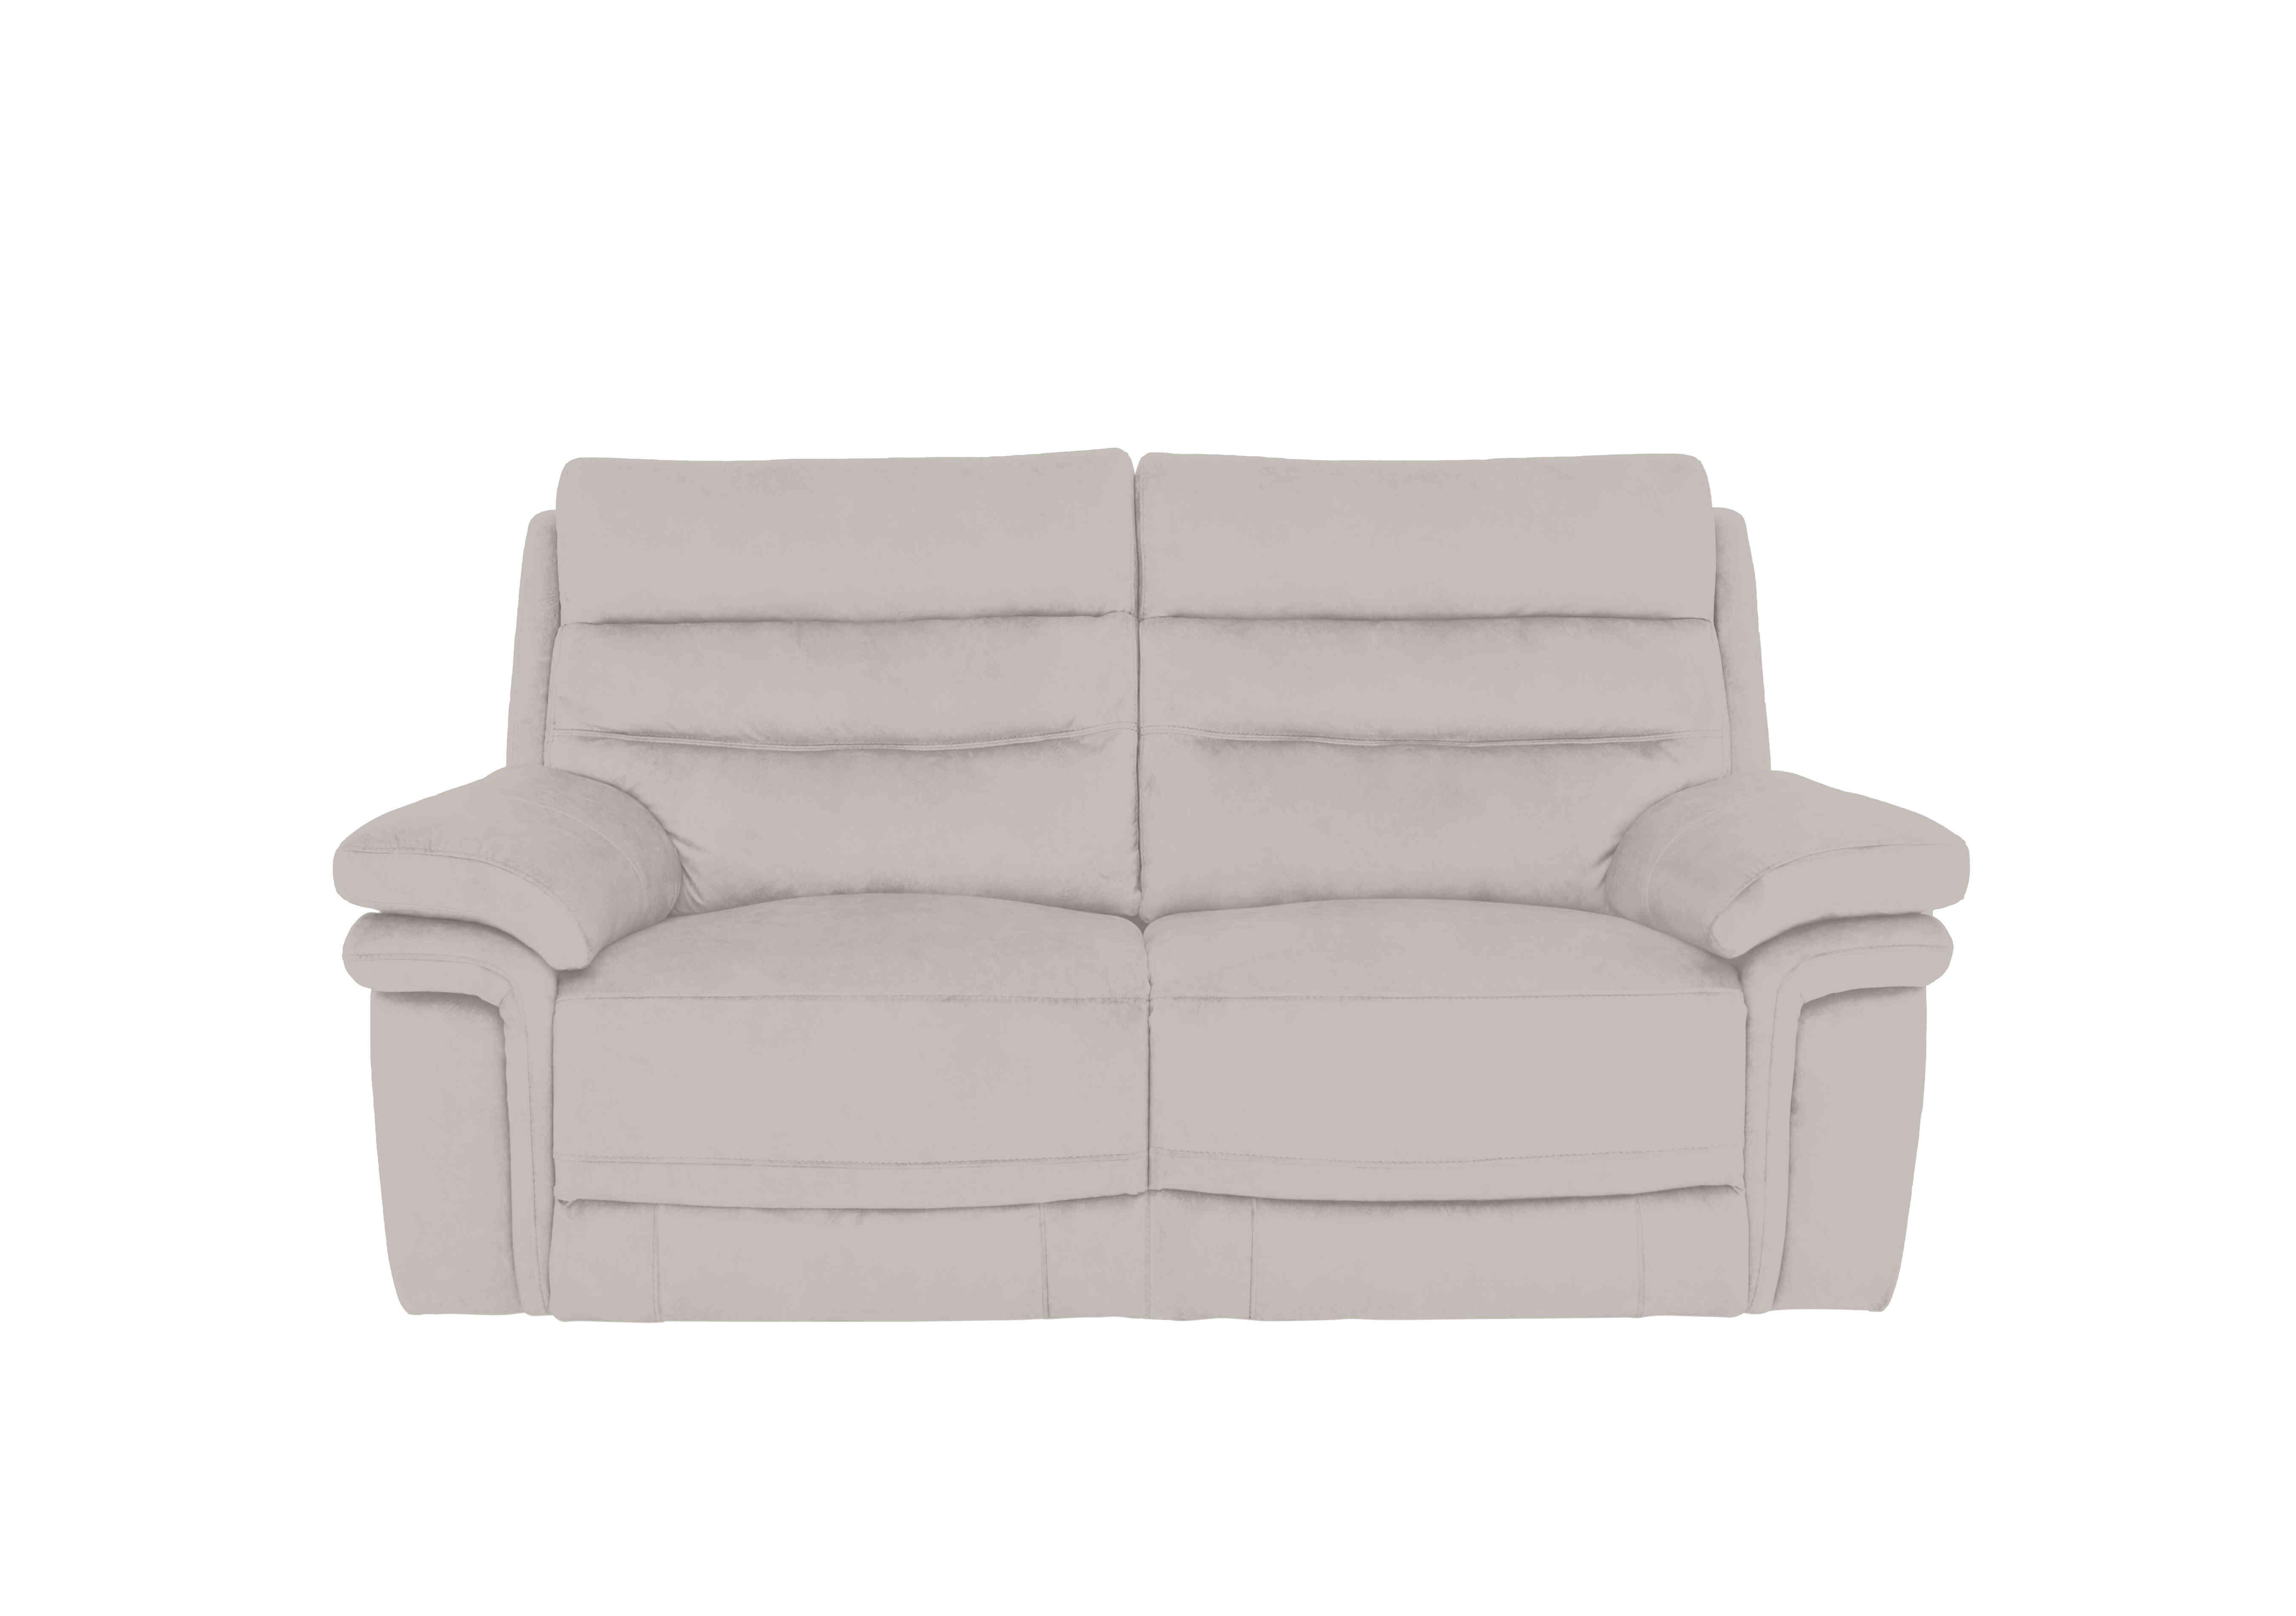 Berlin 2 Seater Fabric Sofa in Velvet White Vv-0307 on Furniture Village